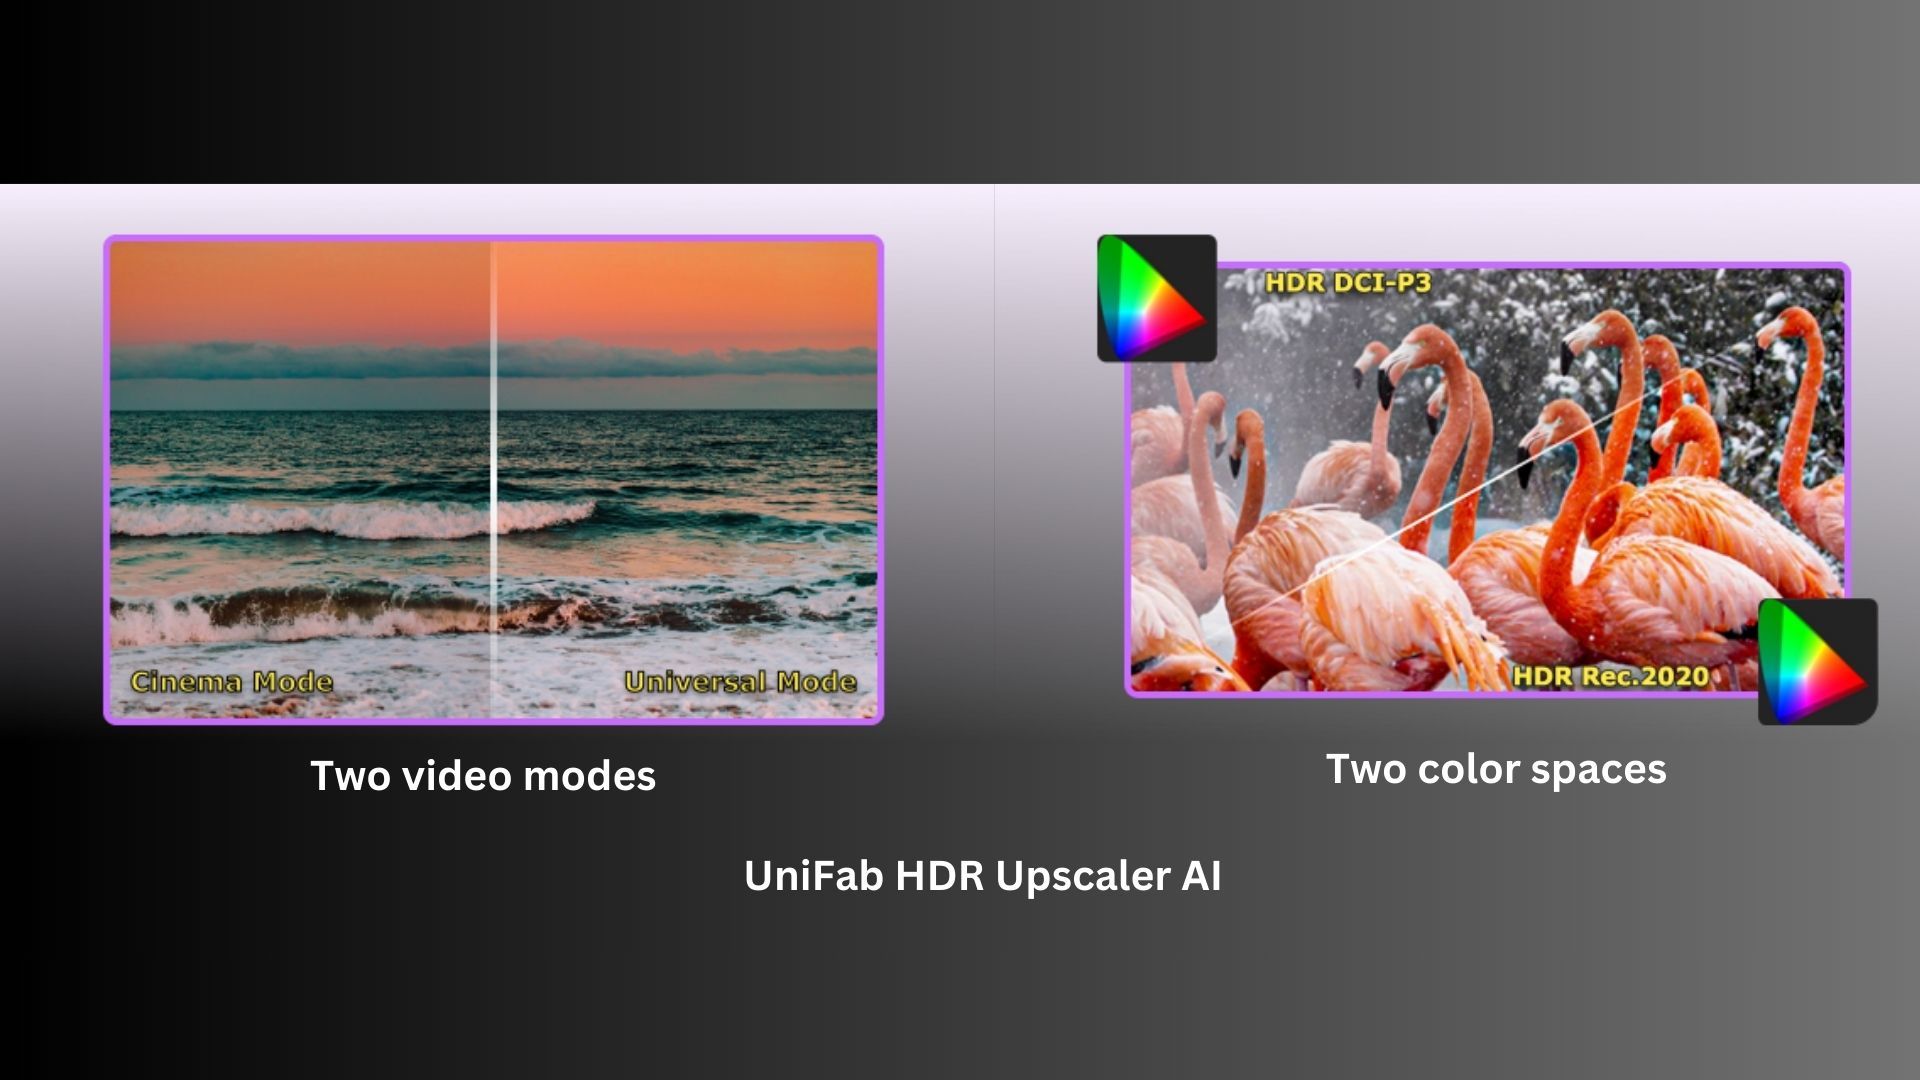 UniFab HDR Upscaler AI